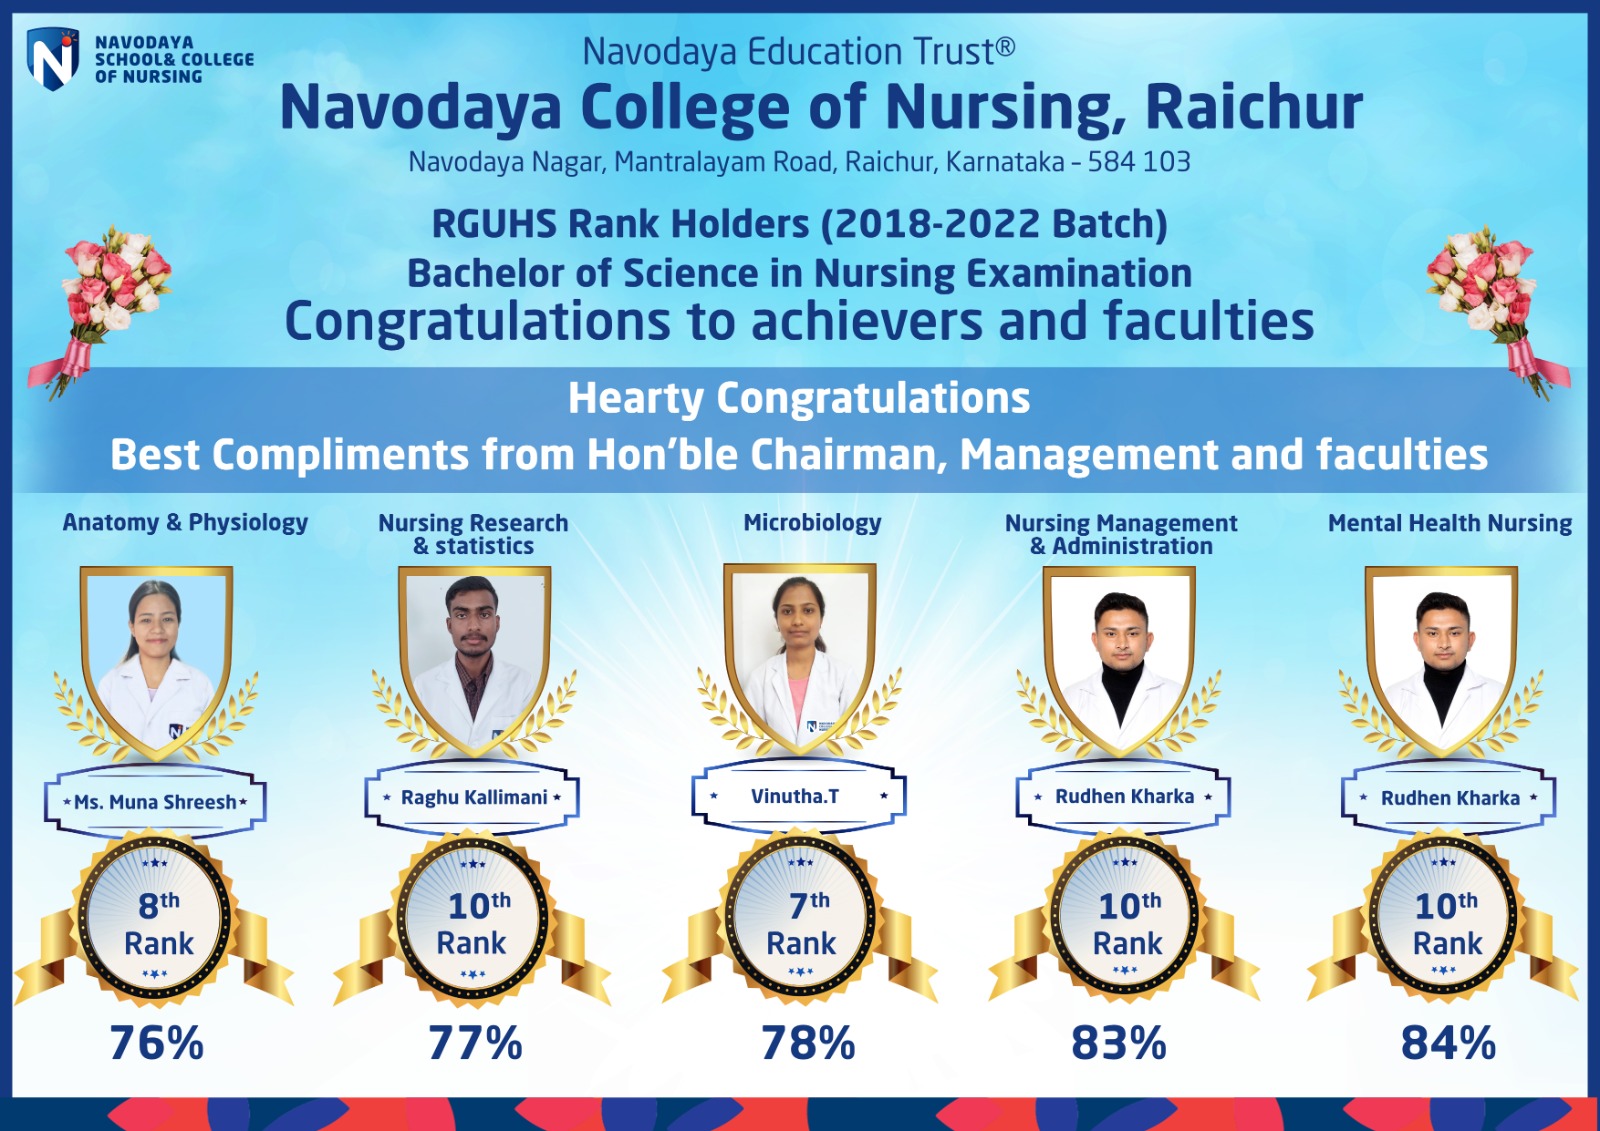 Navodaya College of Nursing – RGUHS Rank Holders (2018-2022 Batch)